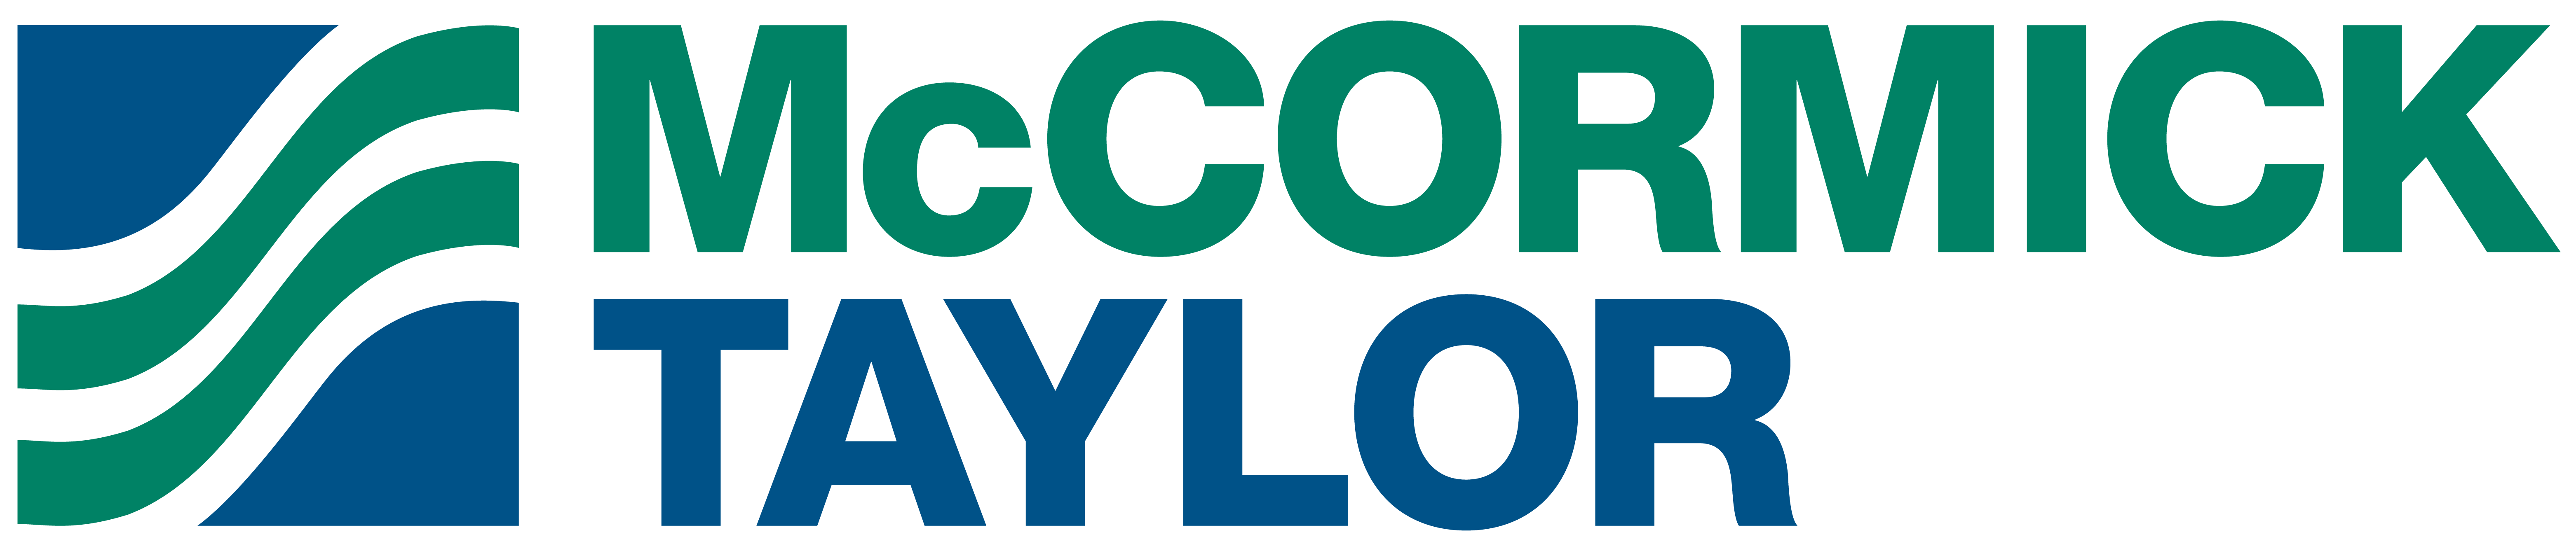 McCormick Taylor Company Logo